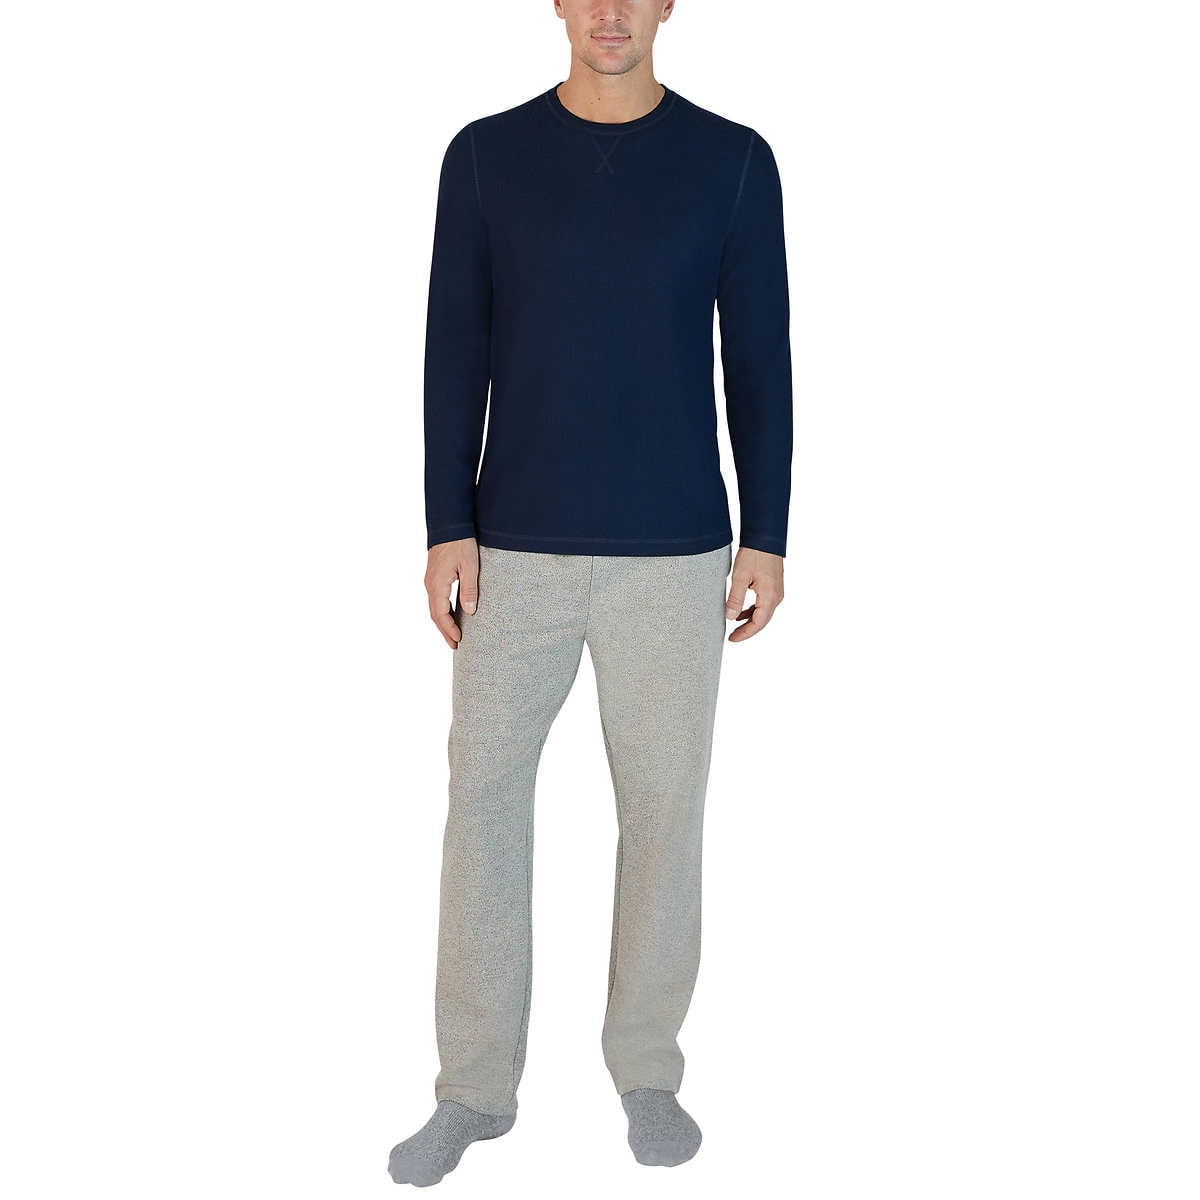 Eddie Bauer Men's 2-Pack XL Lounge Pajamas Set Gray Thermal Shirt Fleece Pants 